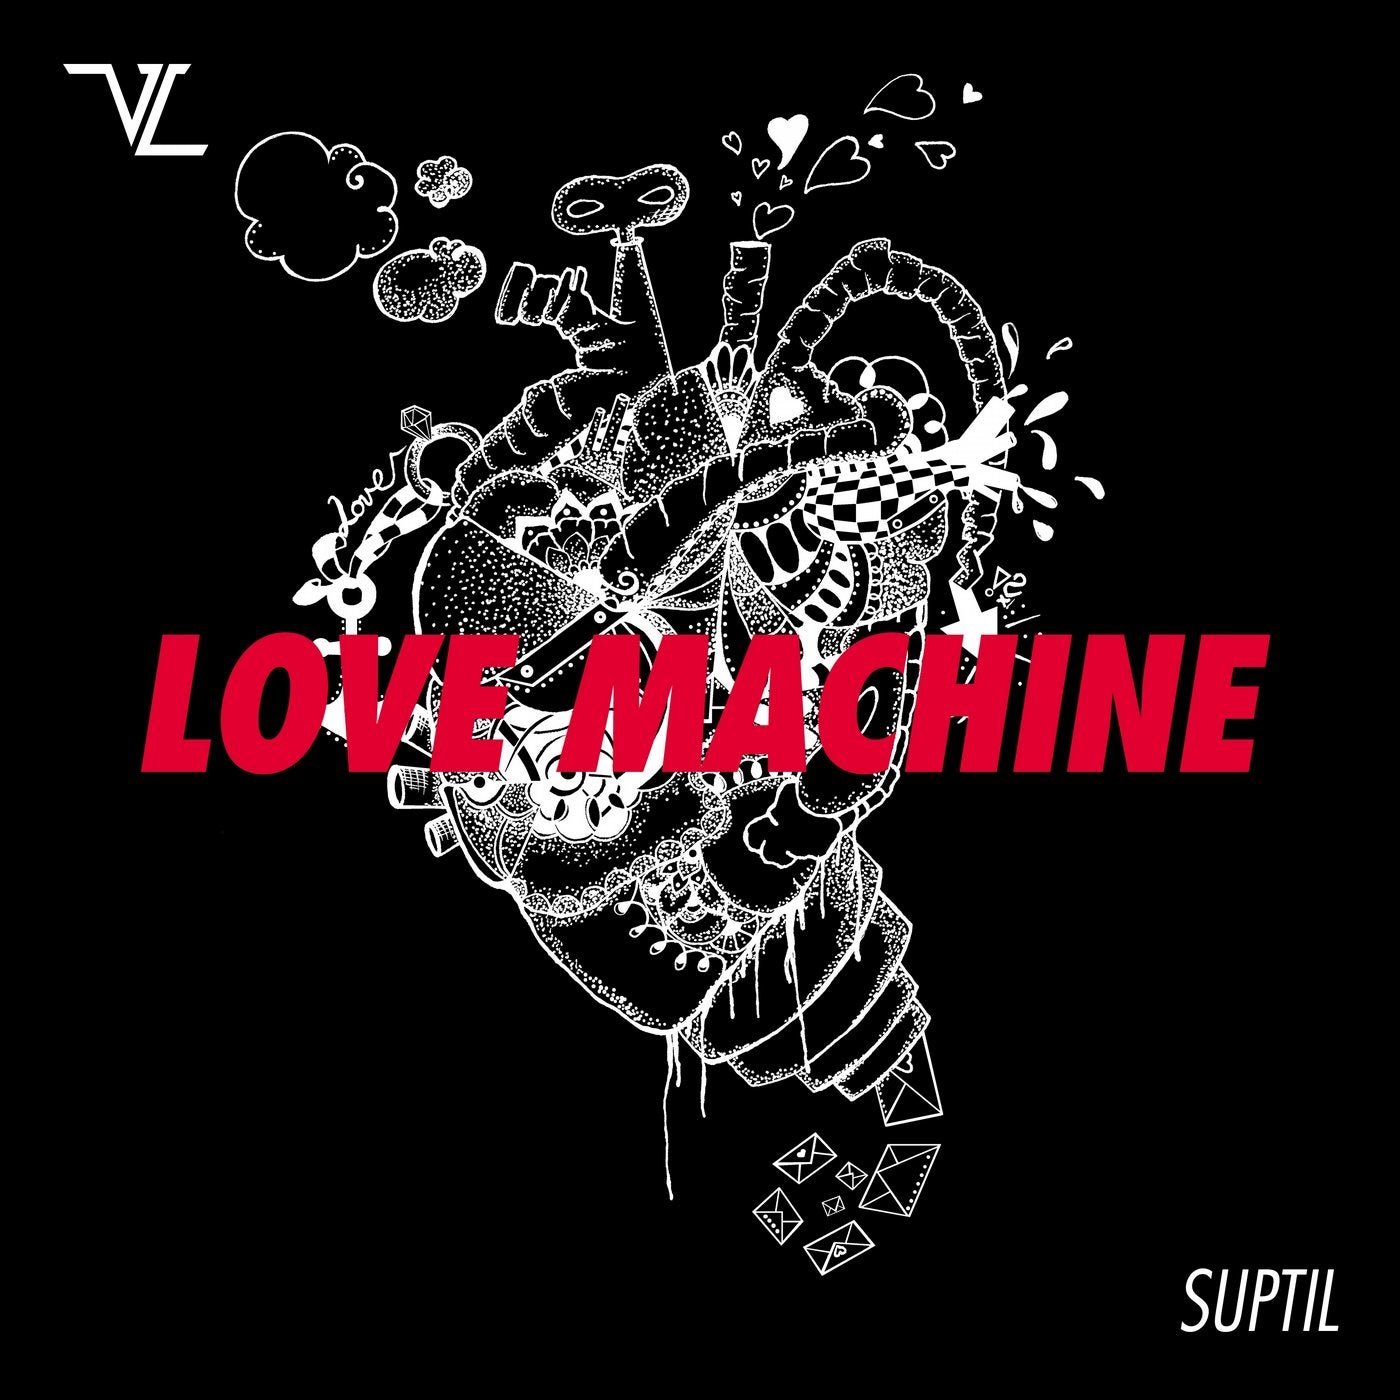 Love Machine